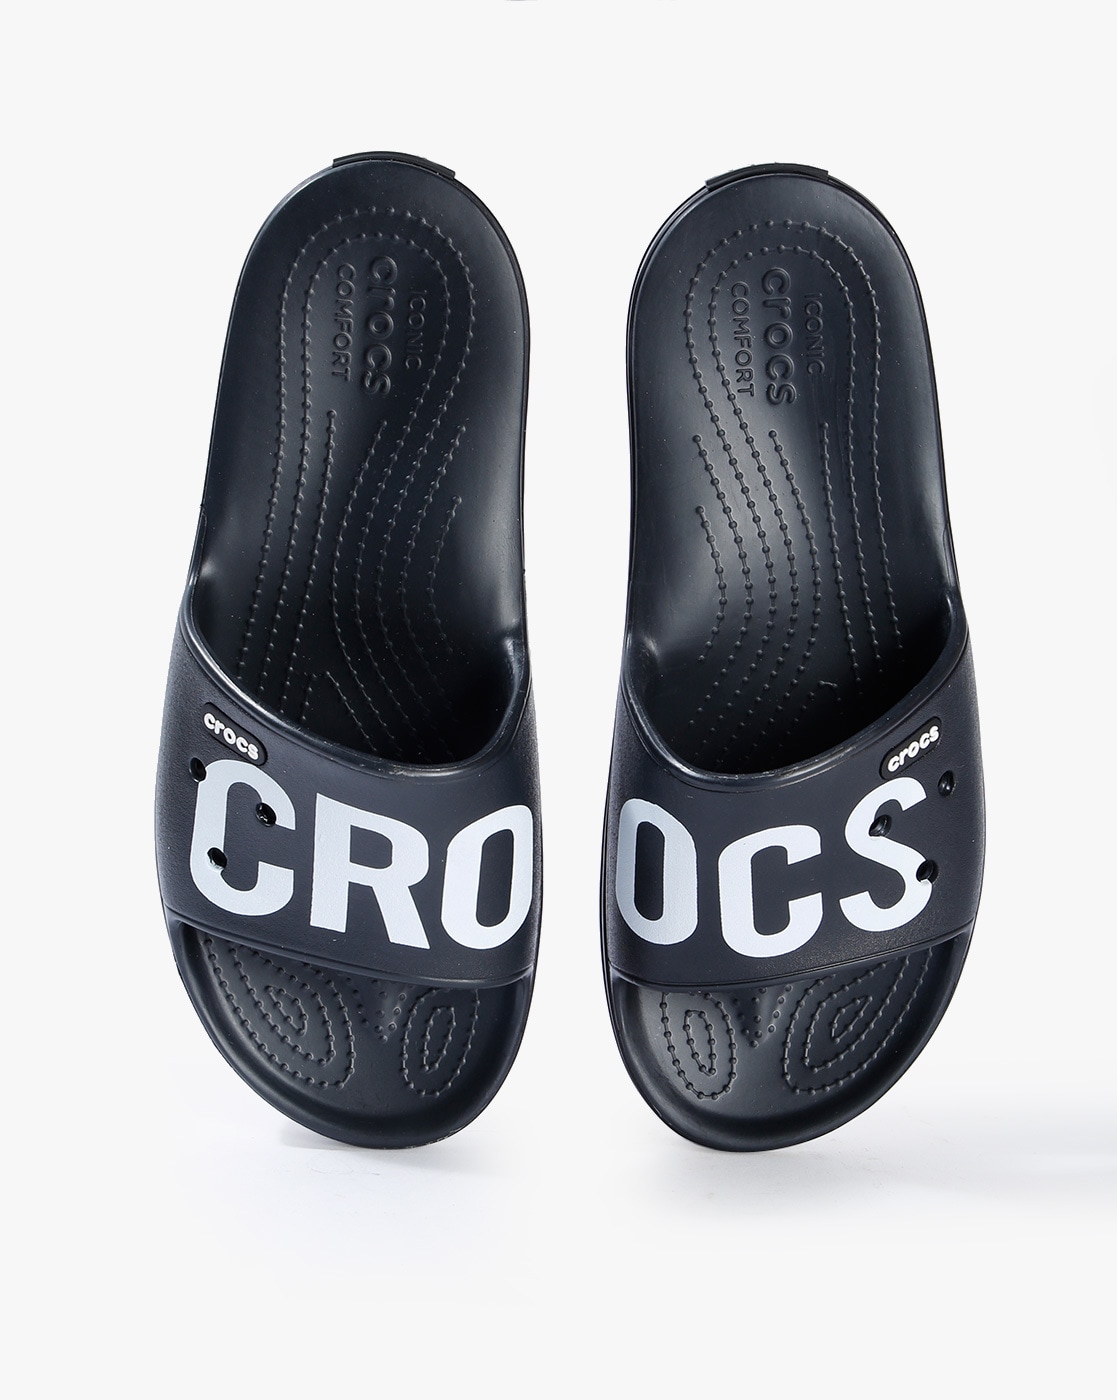 crocs crocband iii